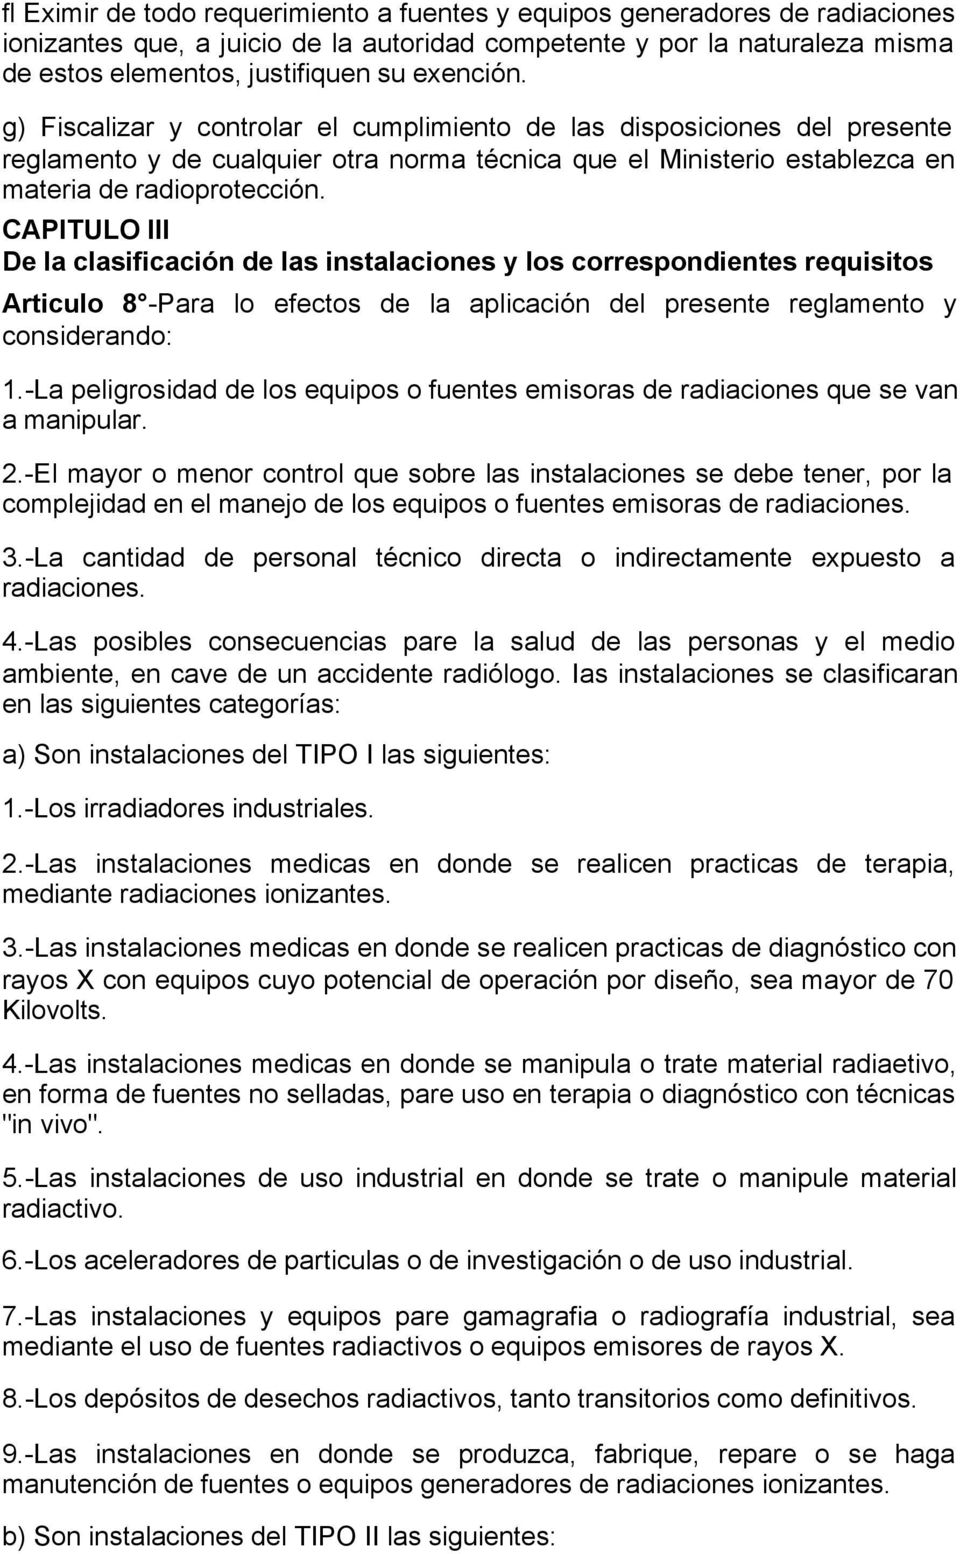 CAPITULO III De la clasificación de las instalaciones y los correspondientes requisitos Articulo 8 -Para lo efectos de la aplicación del presente reglamento y considerando: 1.